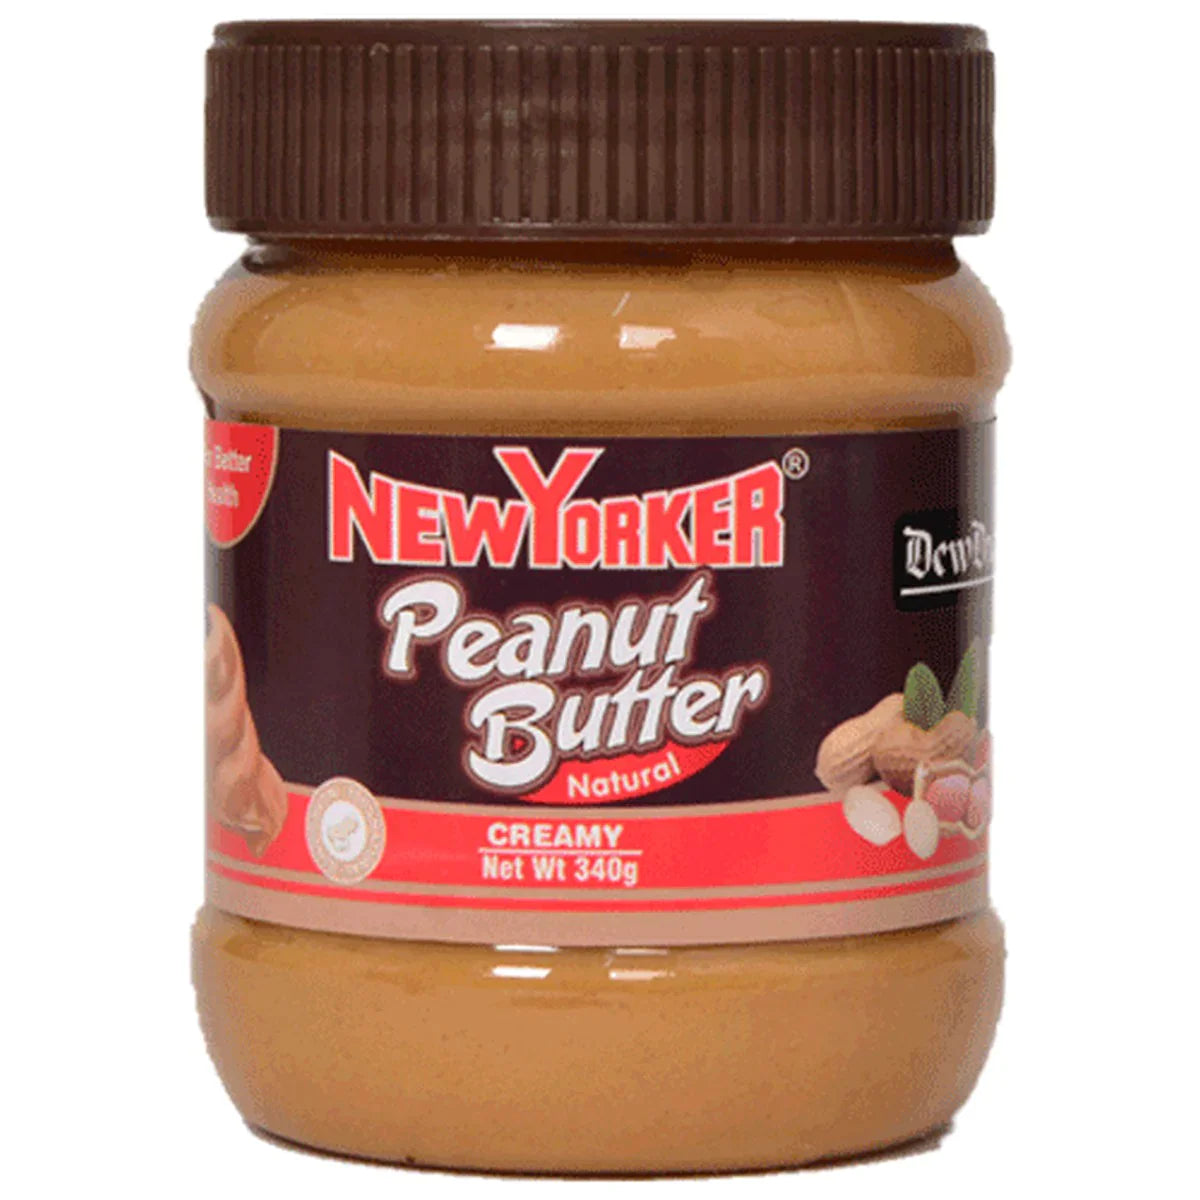 New Yorker Peanut Butter 340g